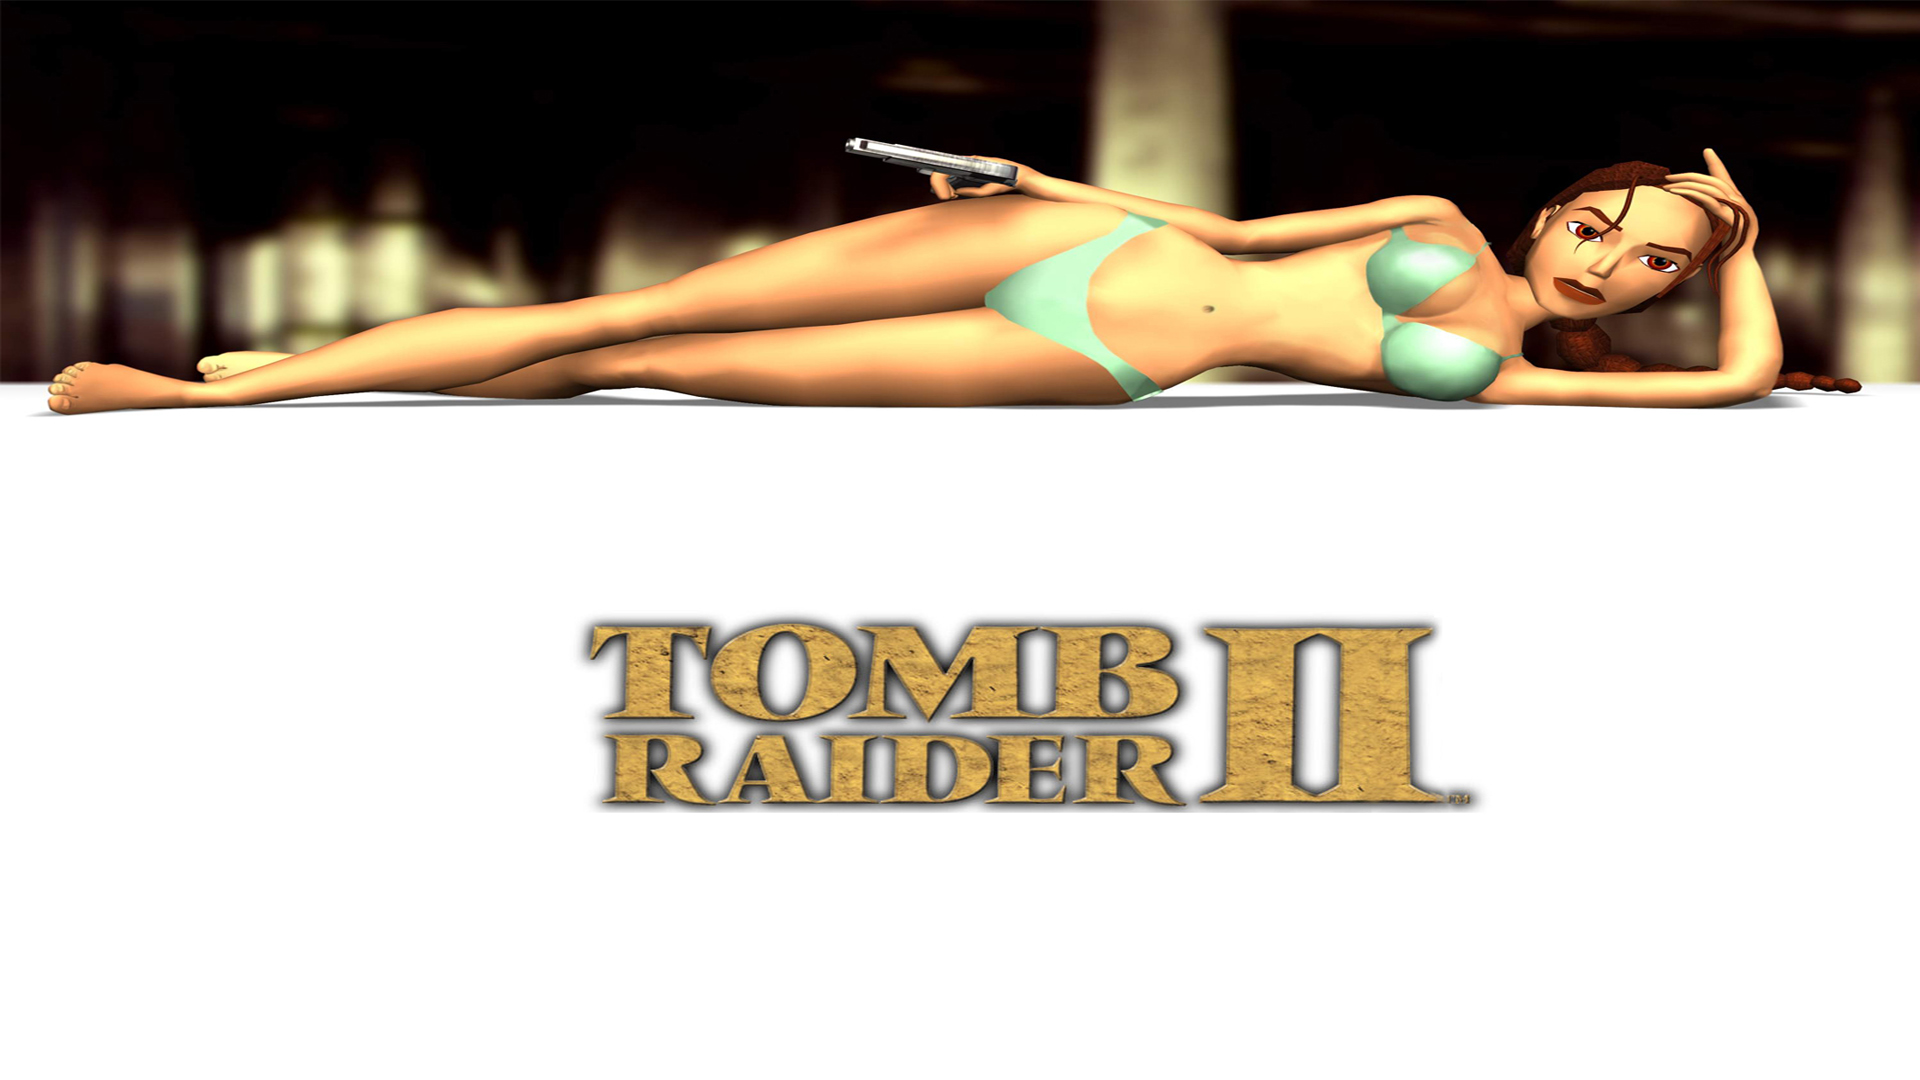 Descarga gratuita de fondo de pantalla para móvil de Tomb Raider Ii, Tomb Raider, Videojuego.